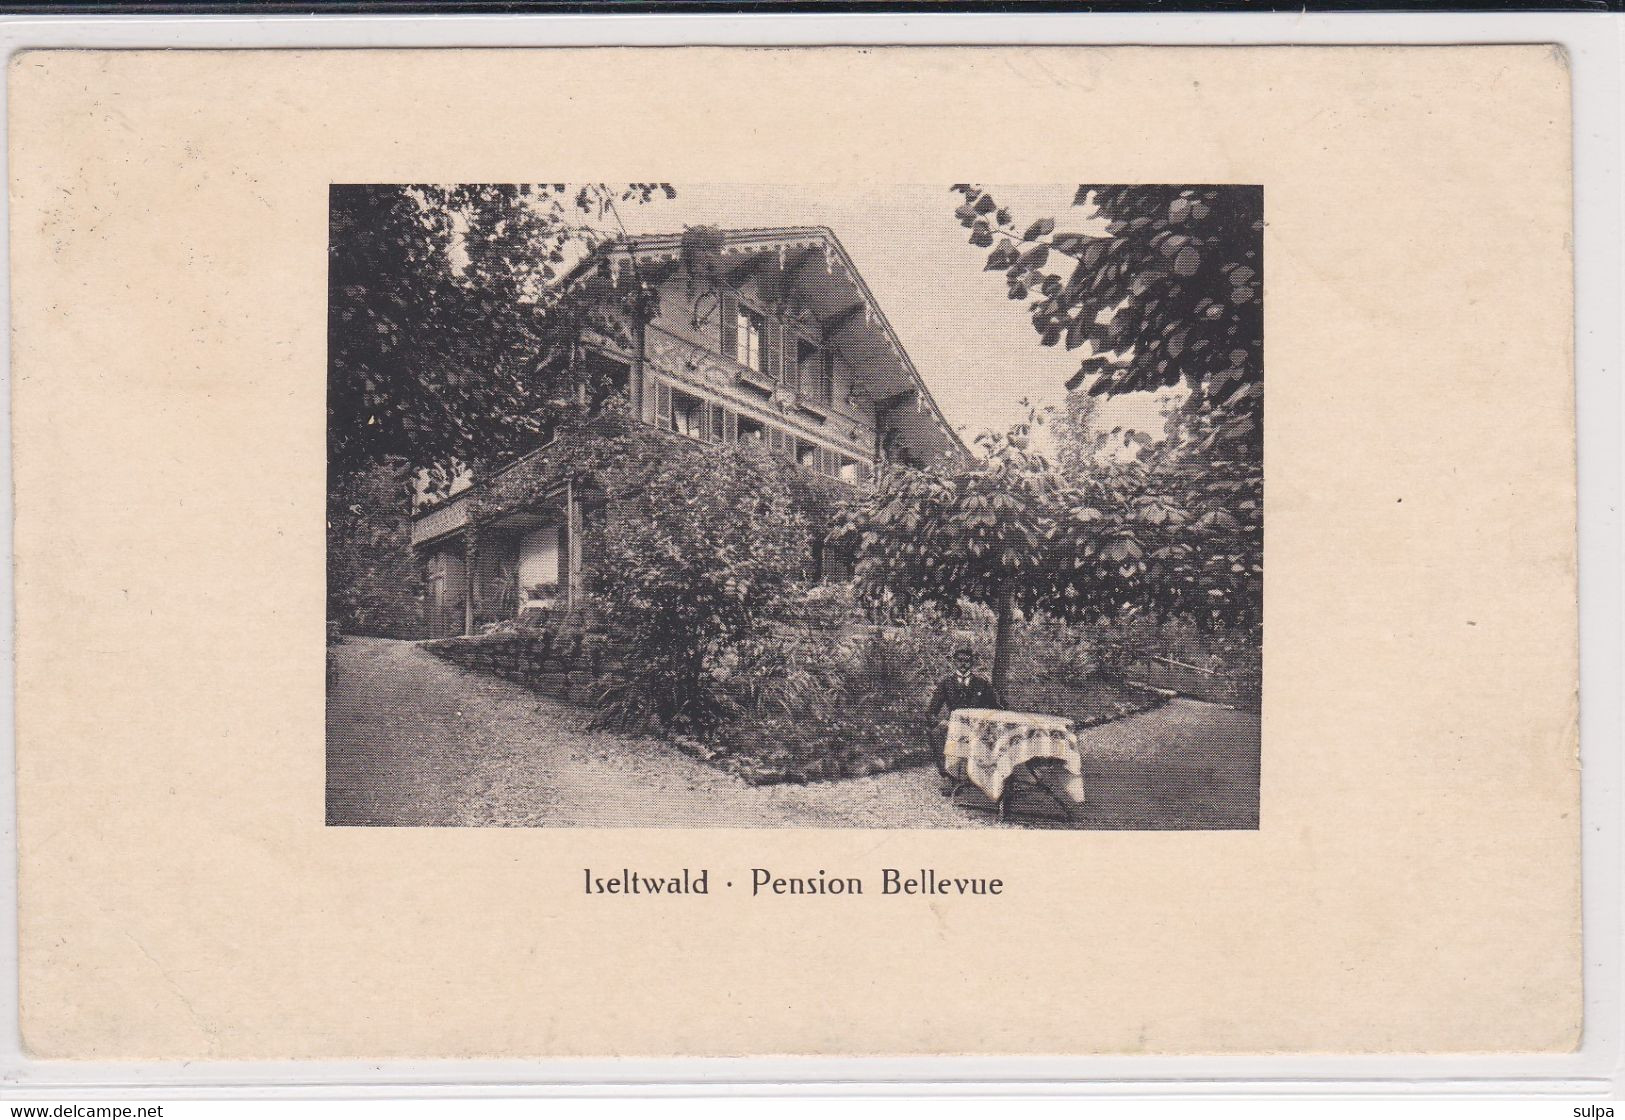 Iseltwald, Pension Bellevue - Iseltwald